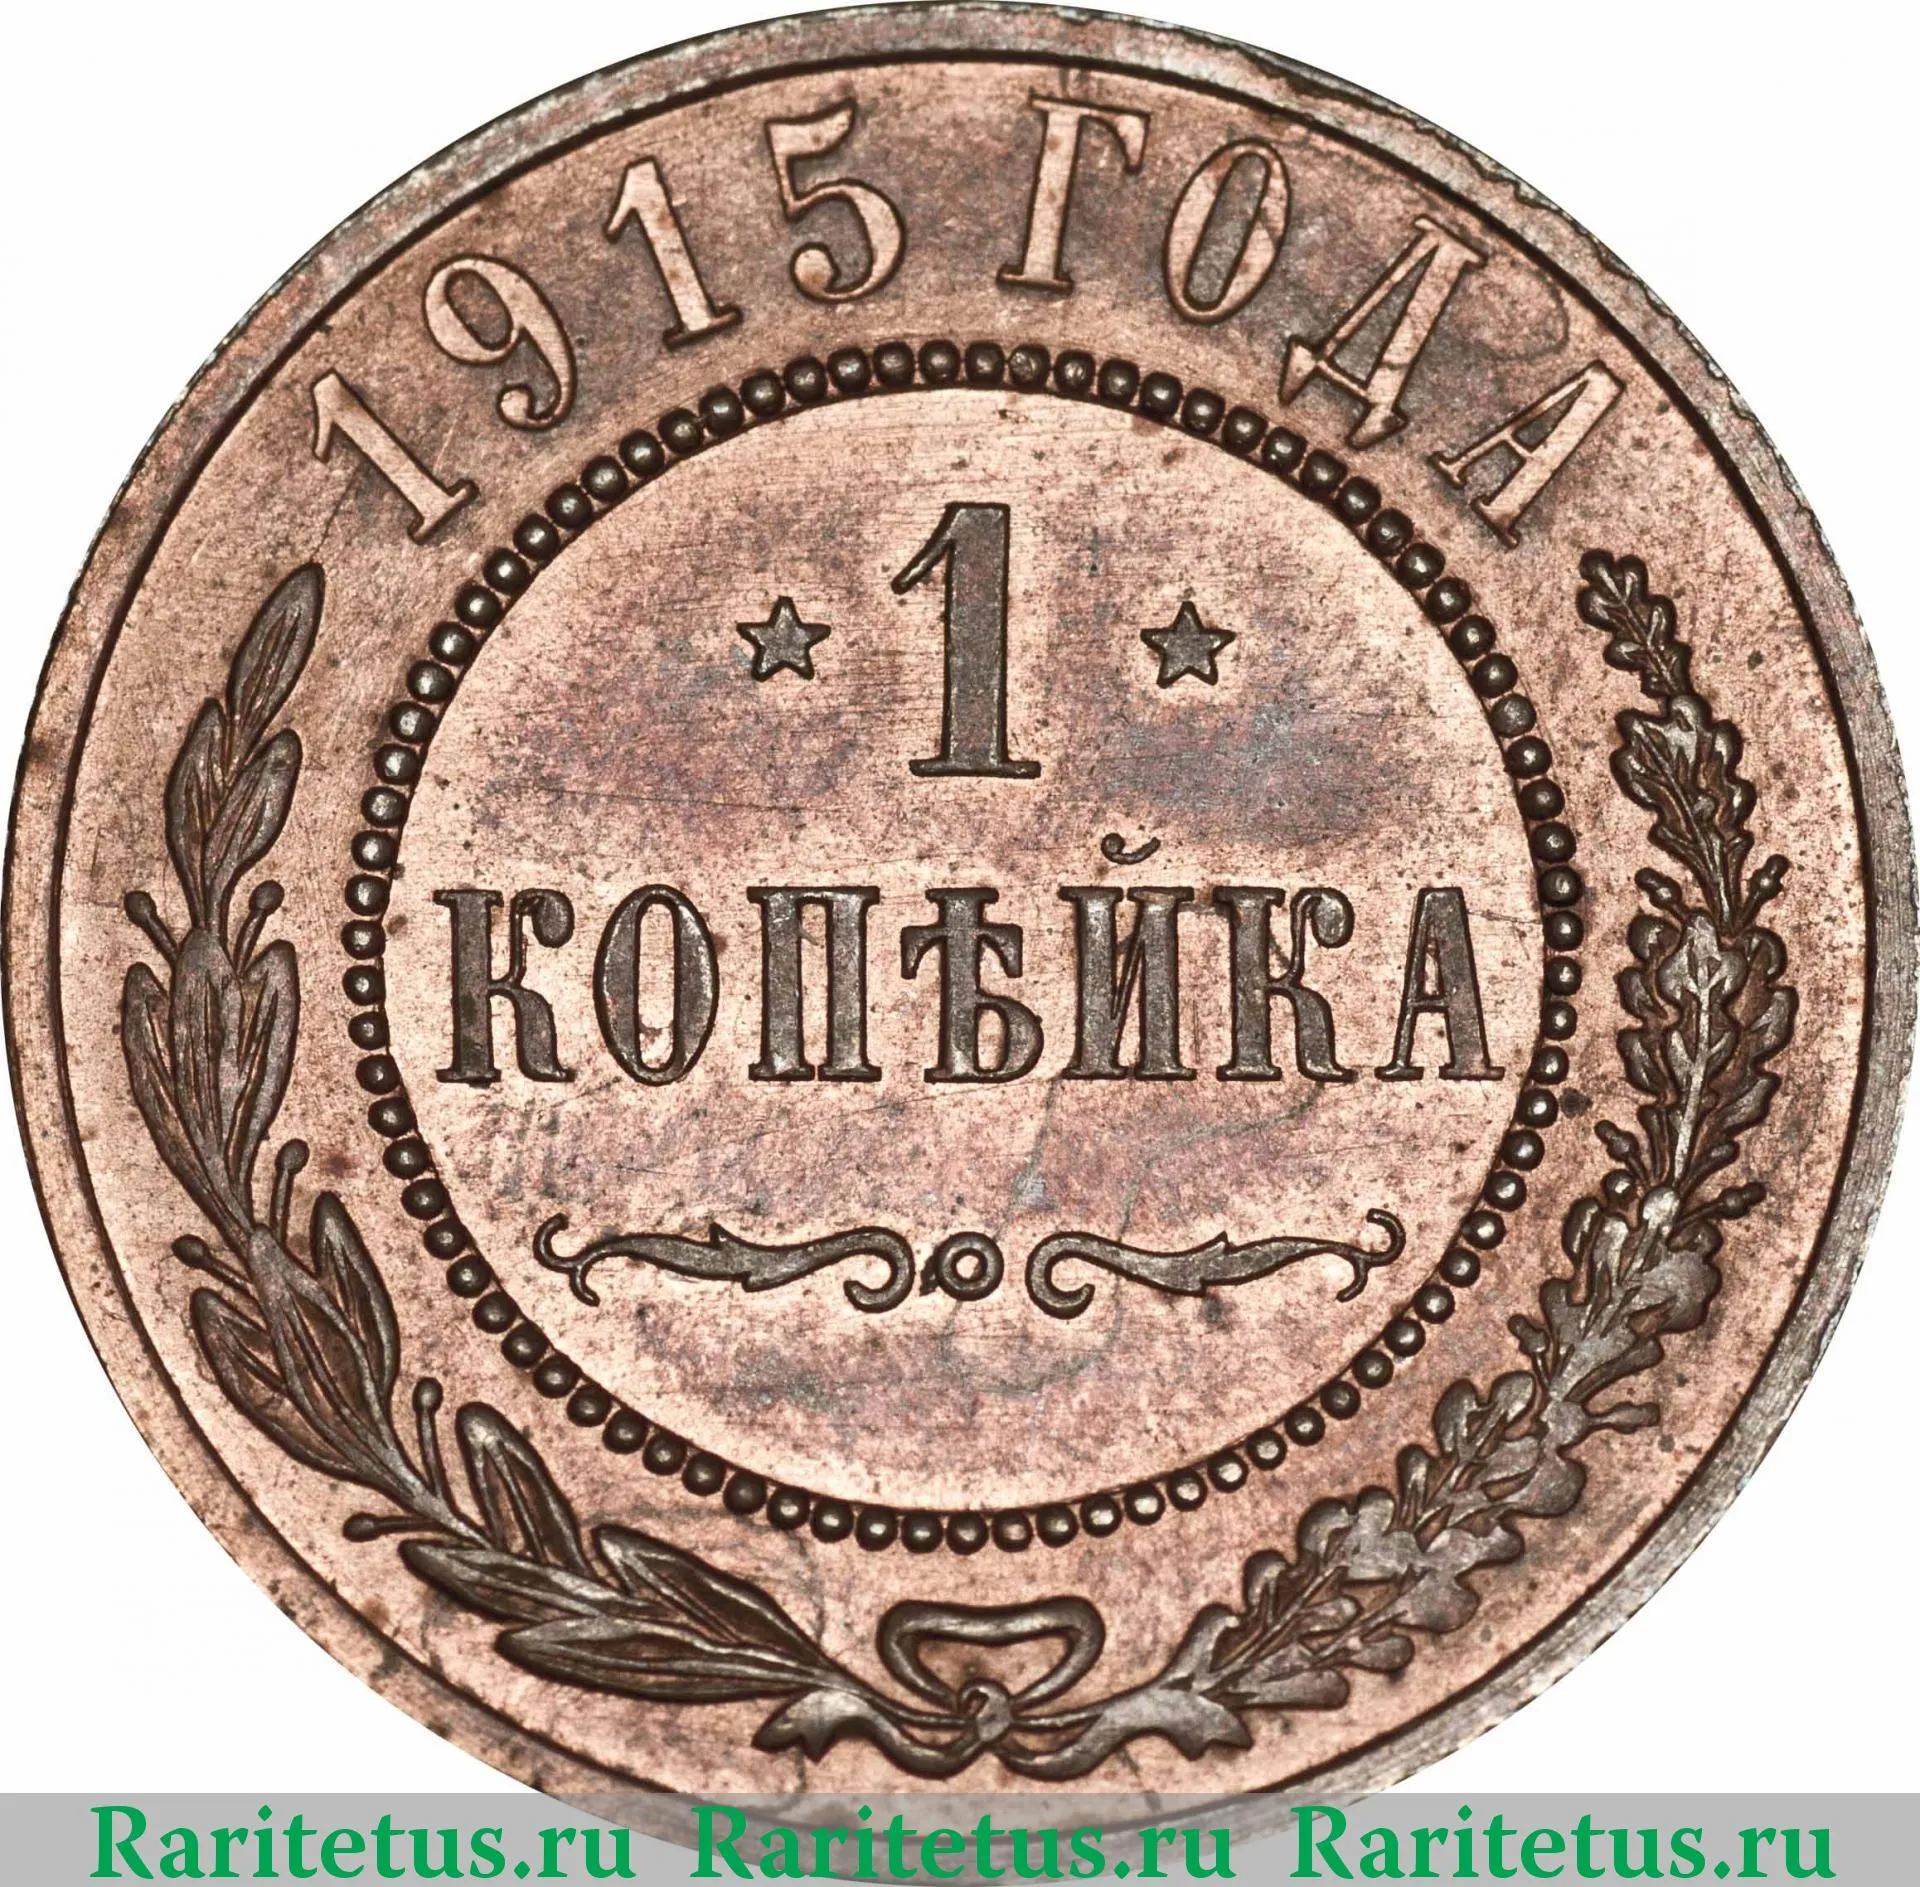 Монета 1 Копейка Фото